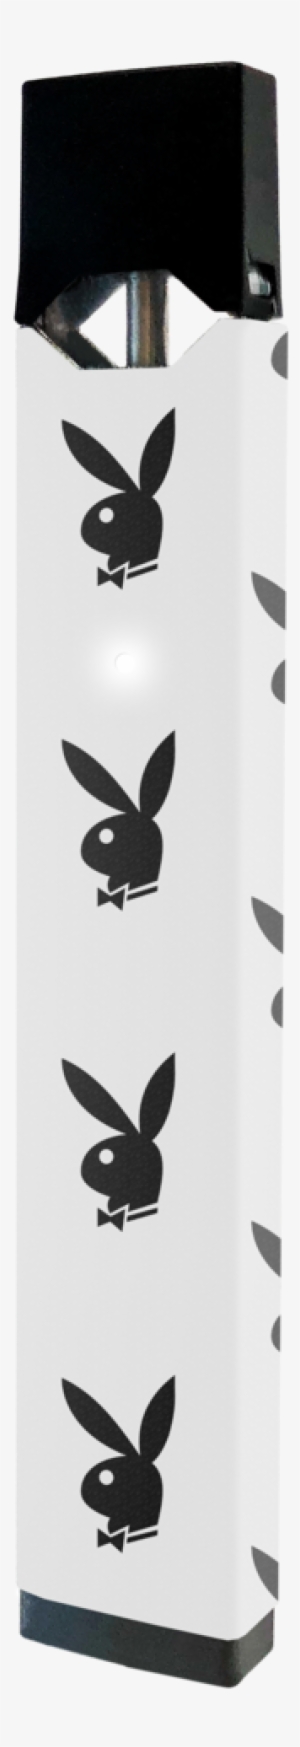 Playboy Bunny Skiin